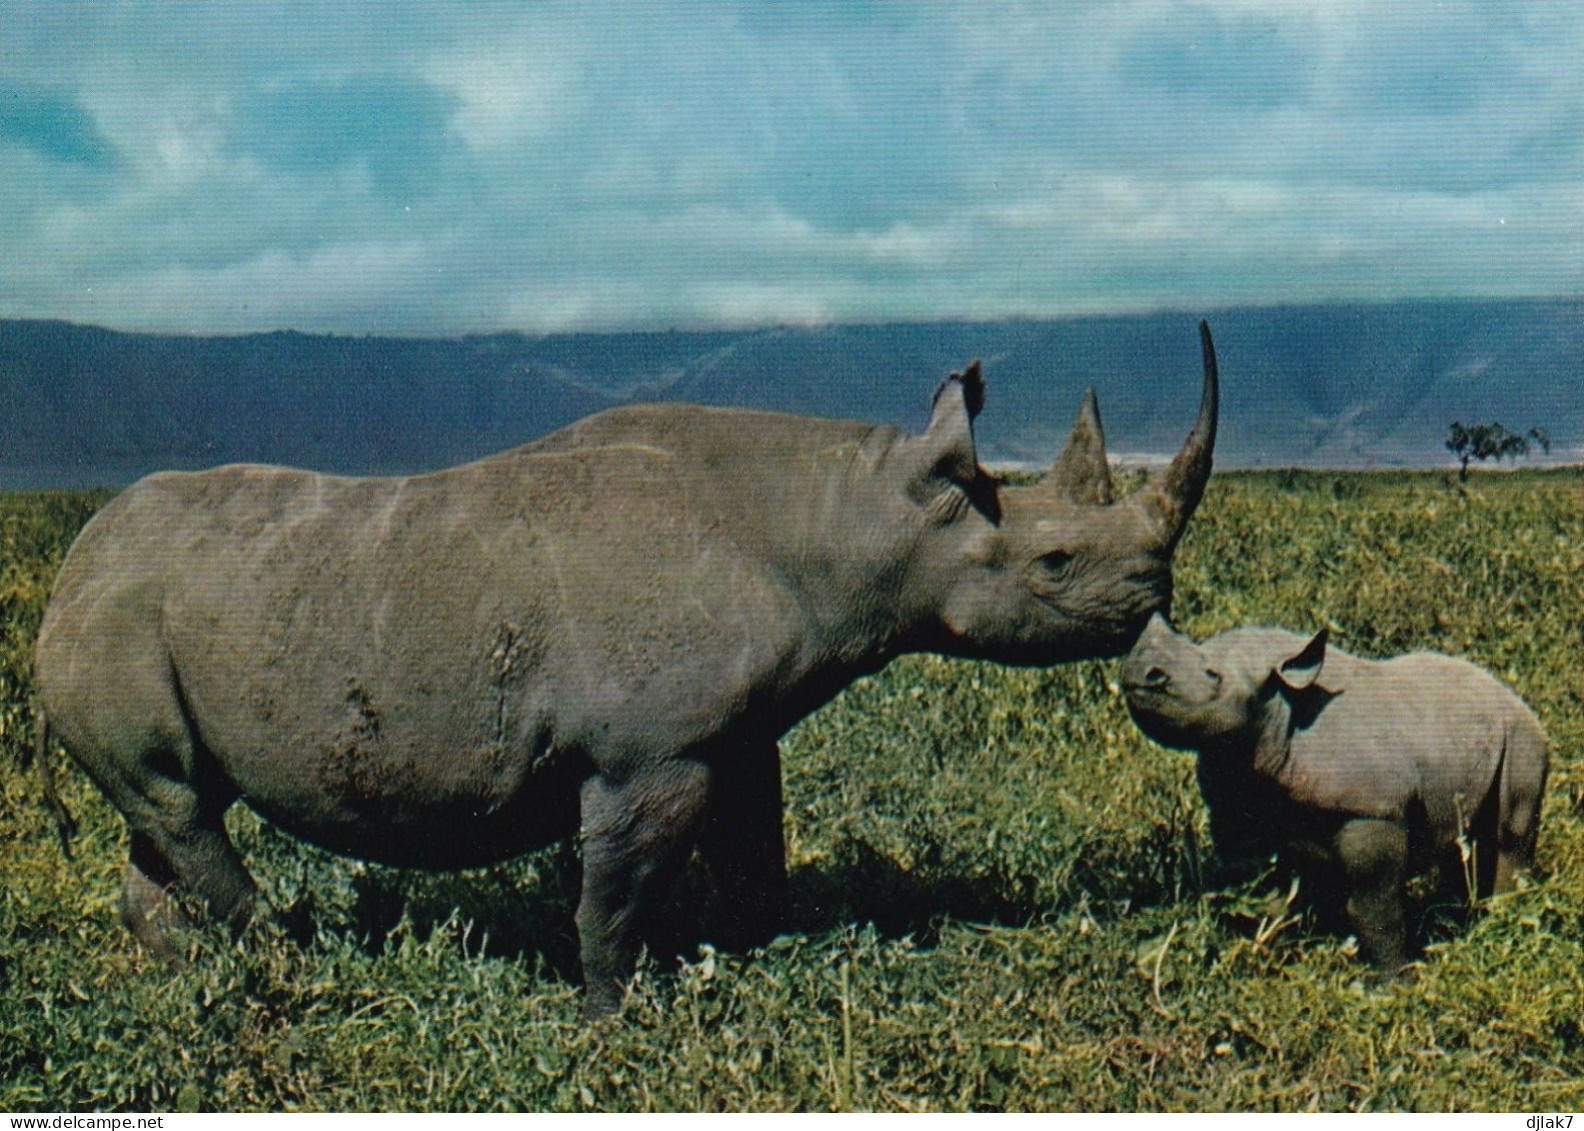 Faune Africaine Rhinocéros - Rhinocéros